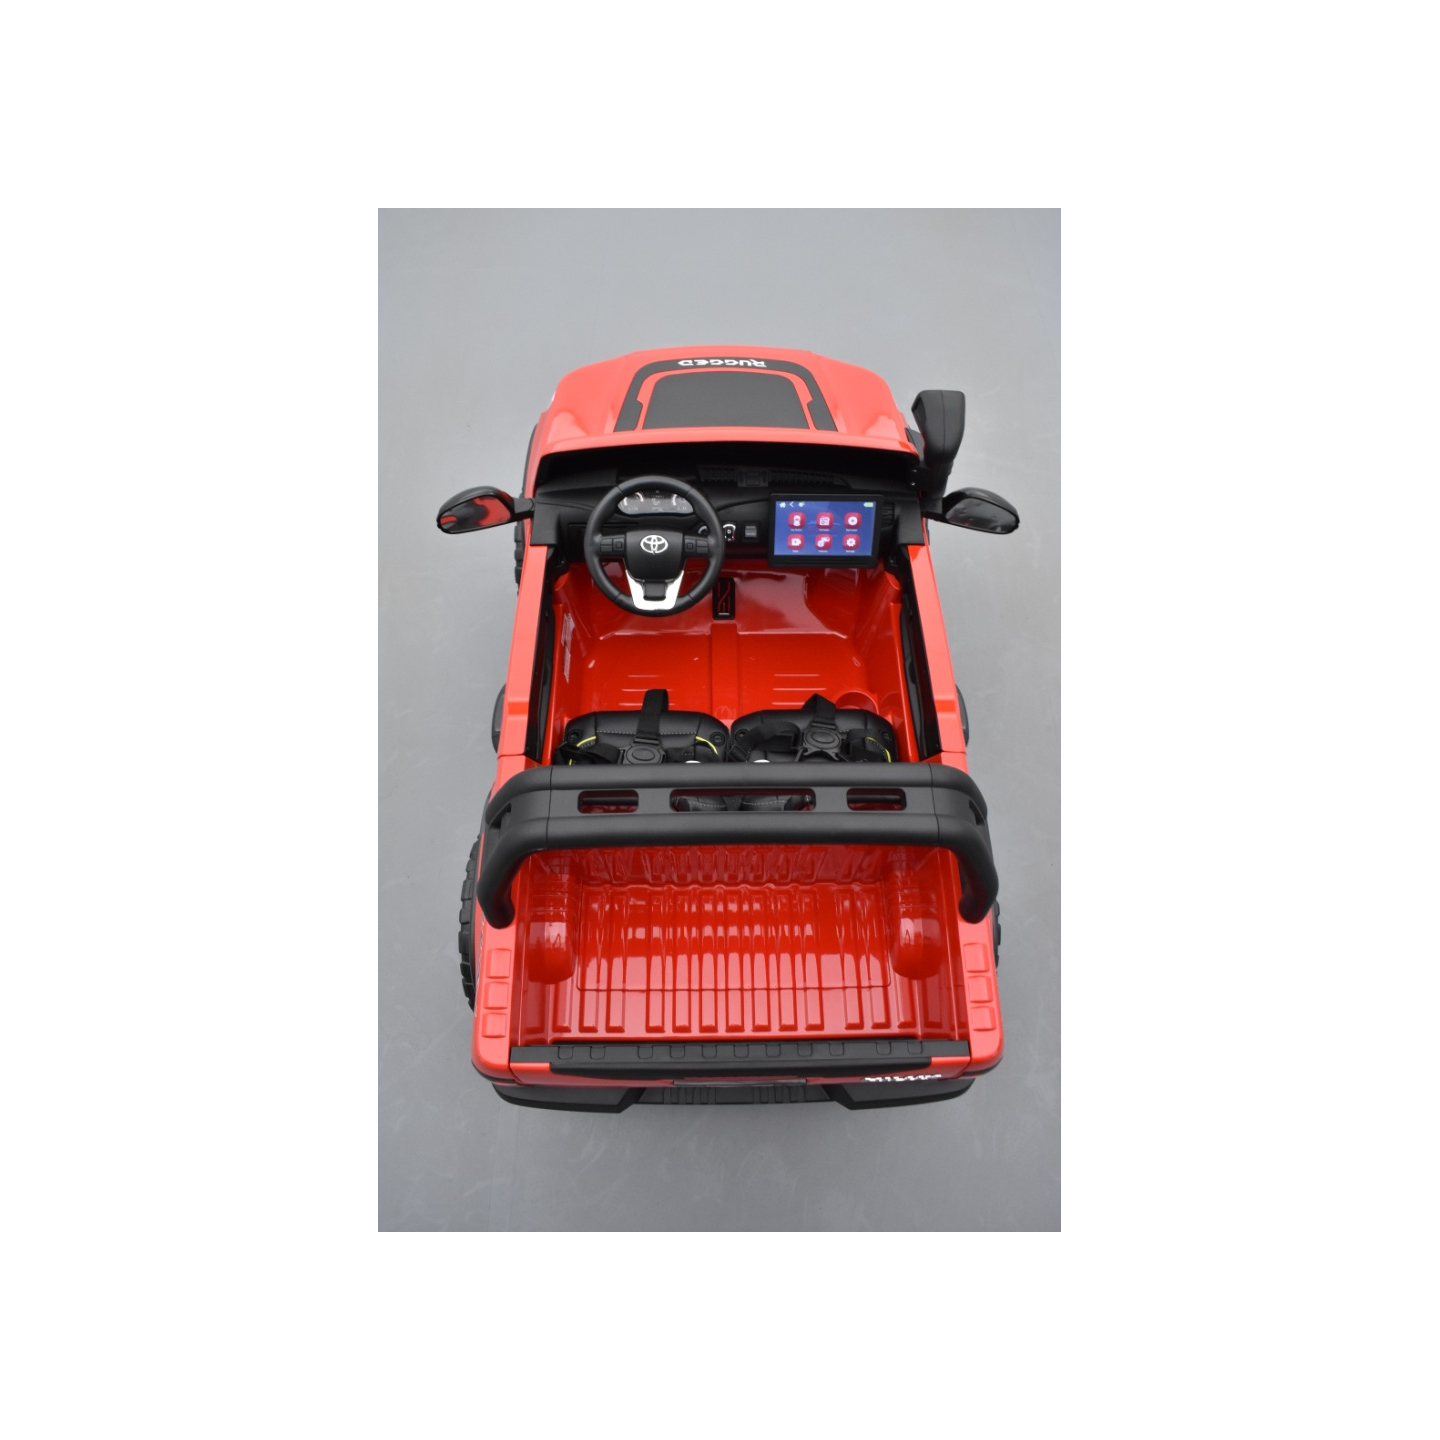 Toyota Hilux rouge 24 Volts électrique pour enfant écran mp4, 4x4 électrique enfant 2 places